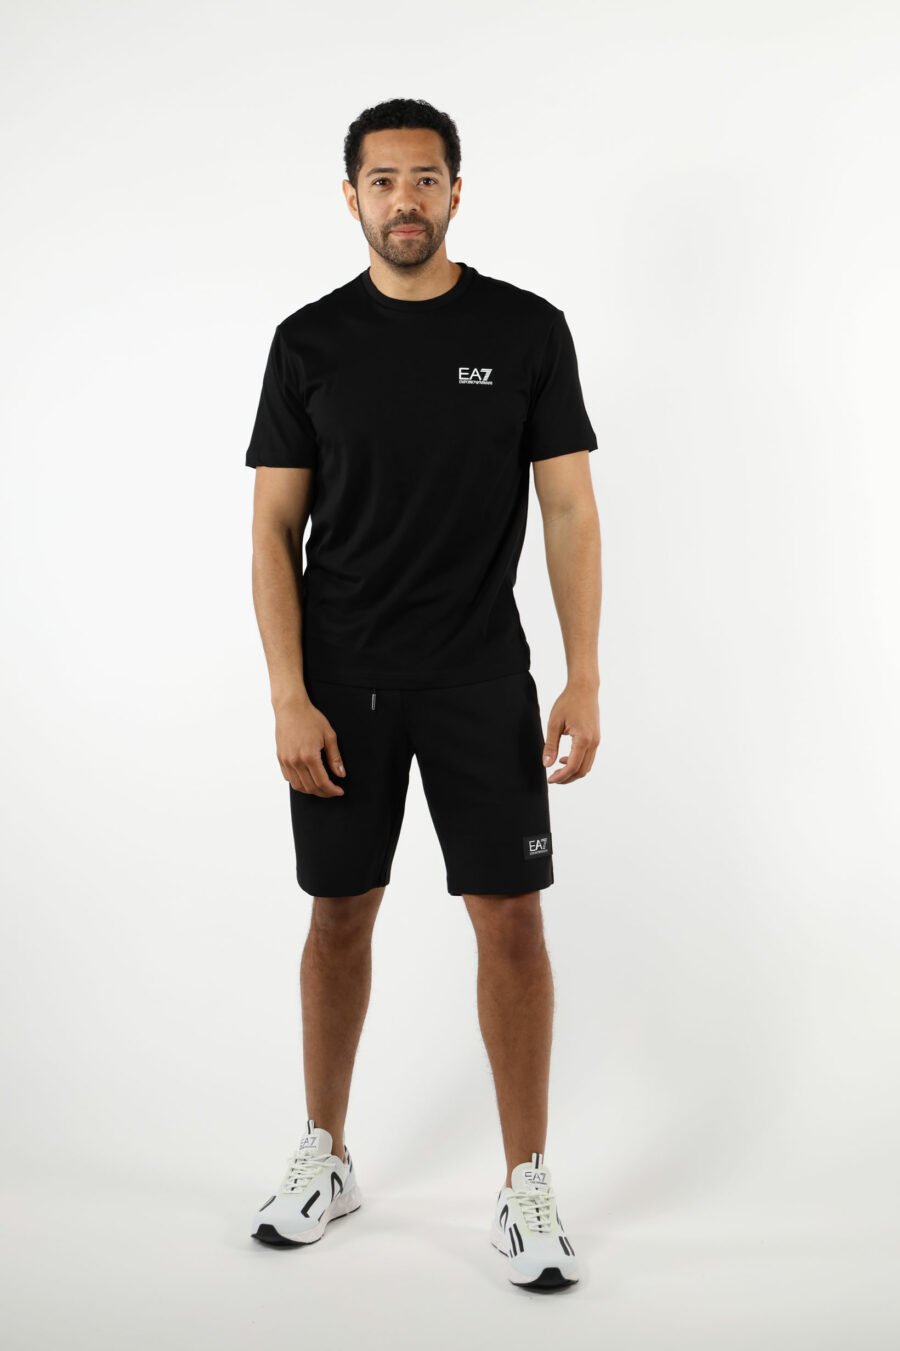 T-shirt preta com maxilogo vertical "lux identity" nas costas - 110884